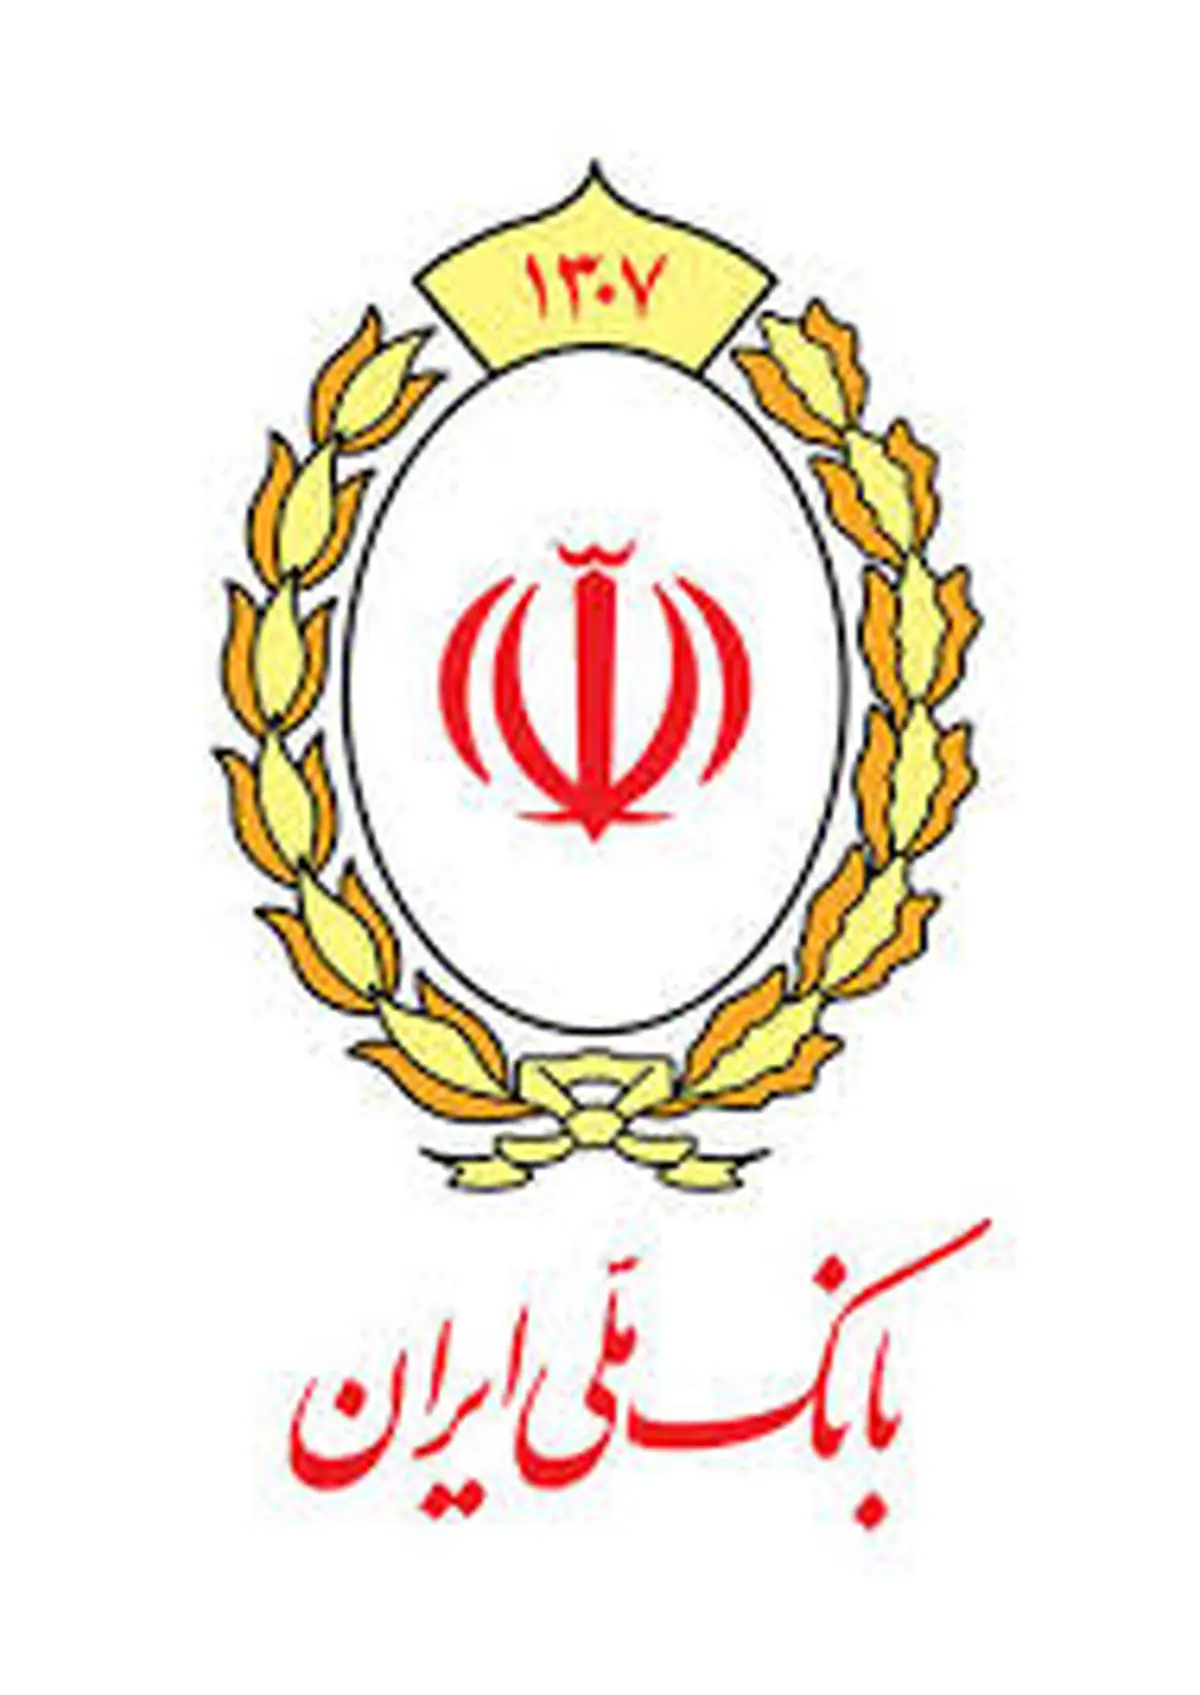 دستور مدیرعامل بانک ملی ایران برای کمک رسانی به زلزله زدگان شمال غرب کشور

